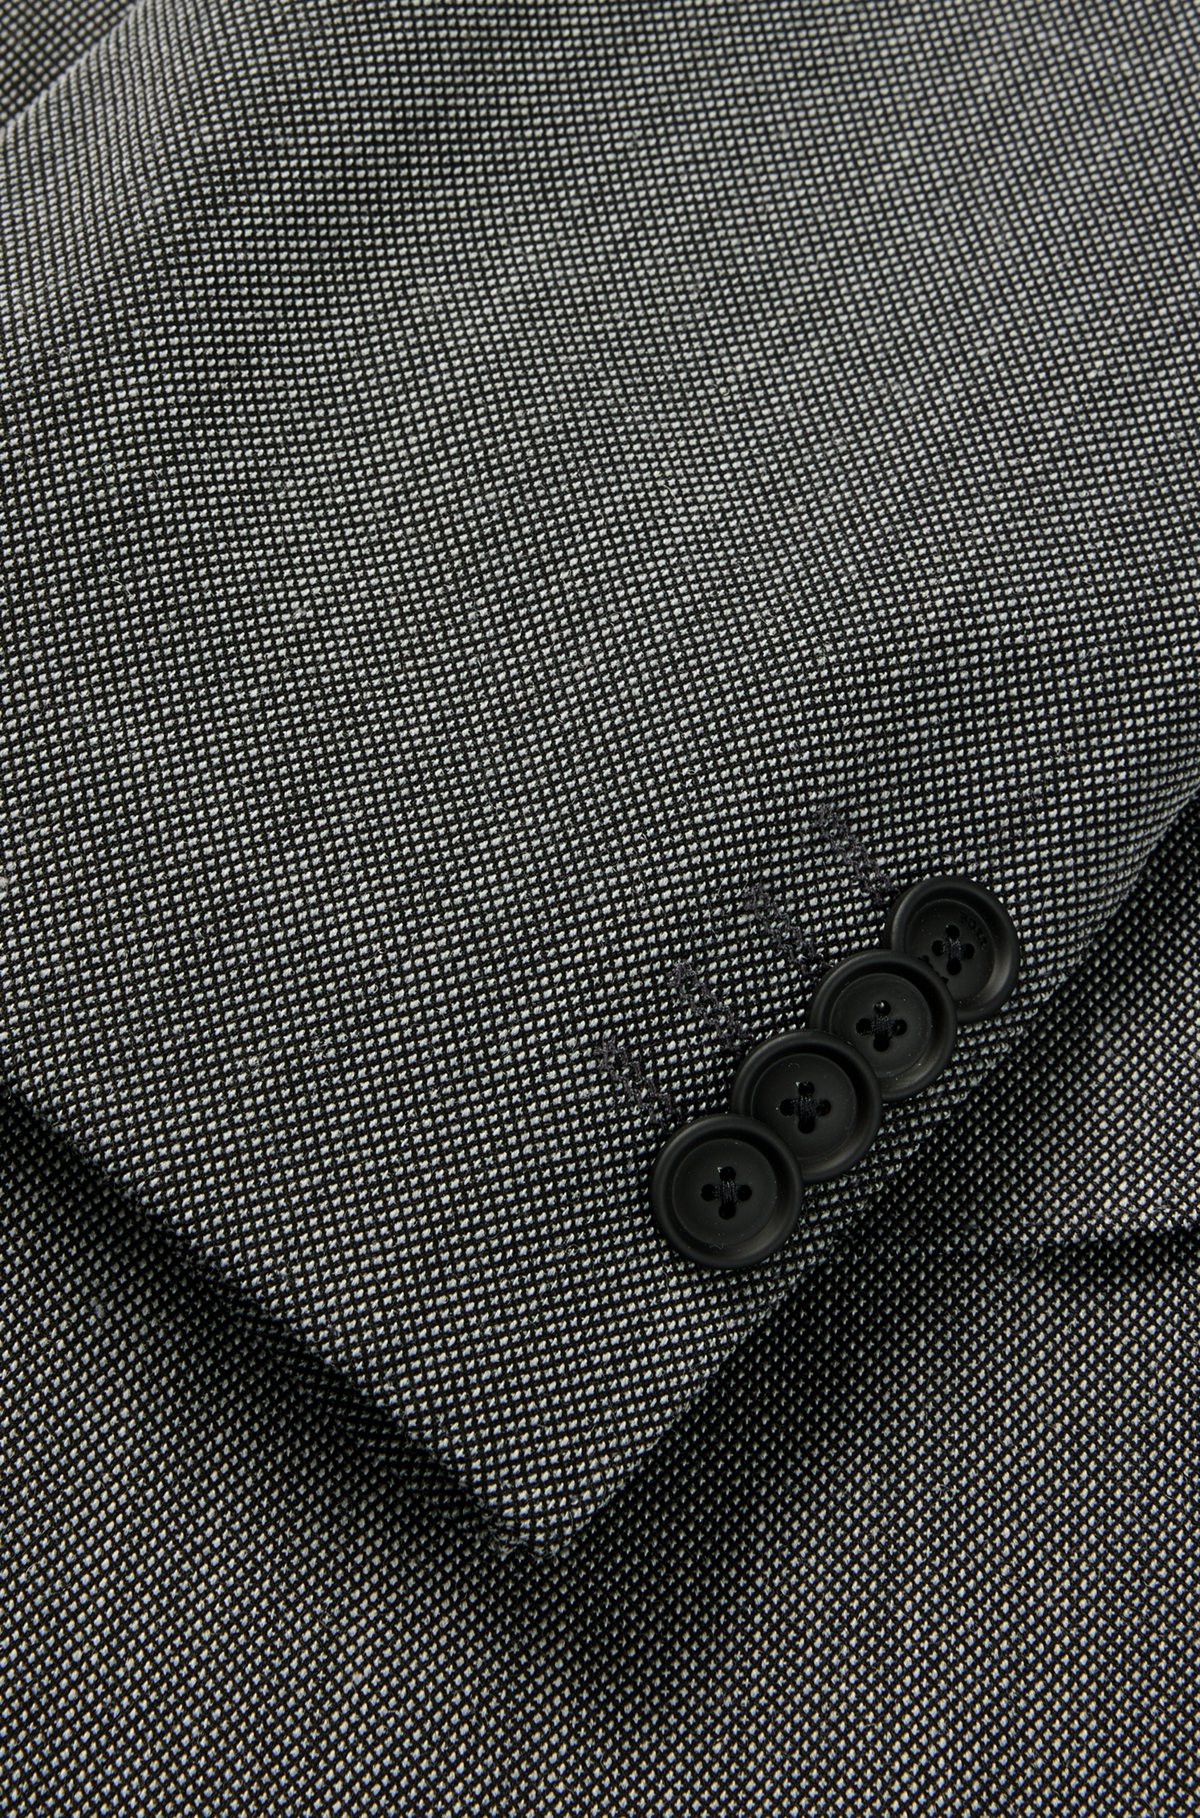 Fein gemusterter Slim-Fit Anzug aus funktionalem Stretch-Gewebe, Silber